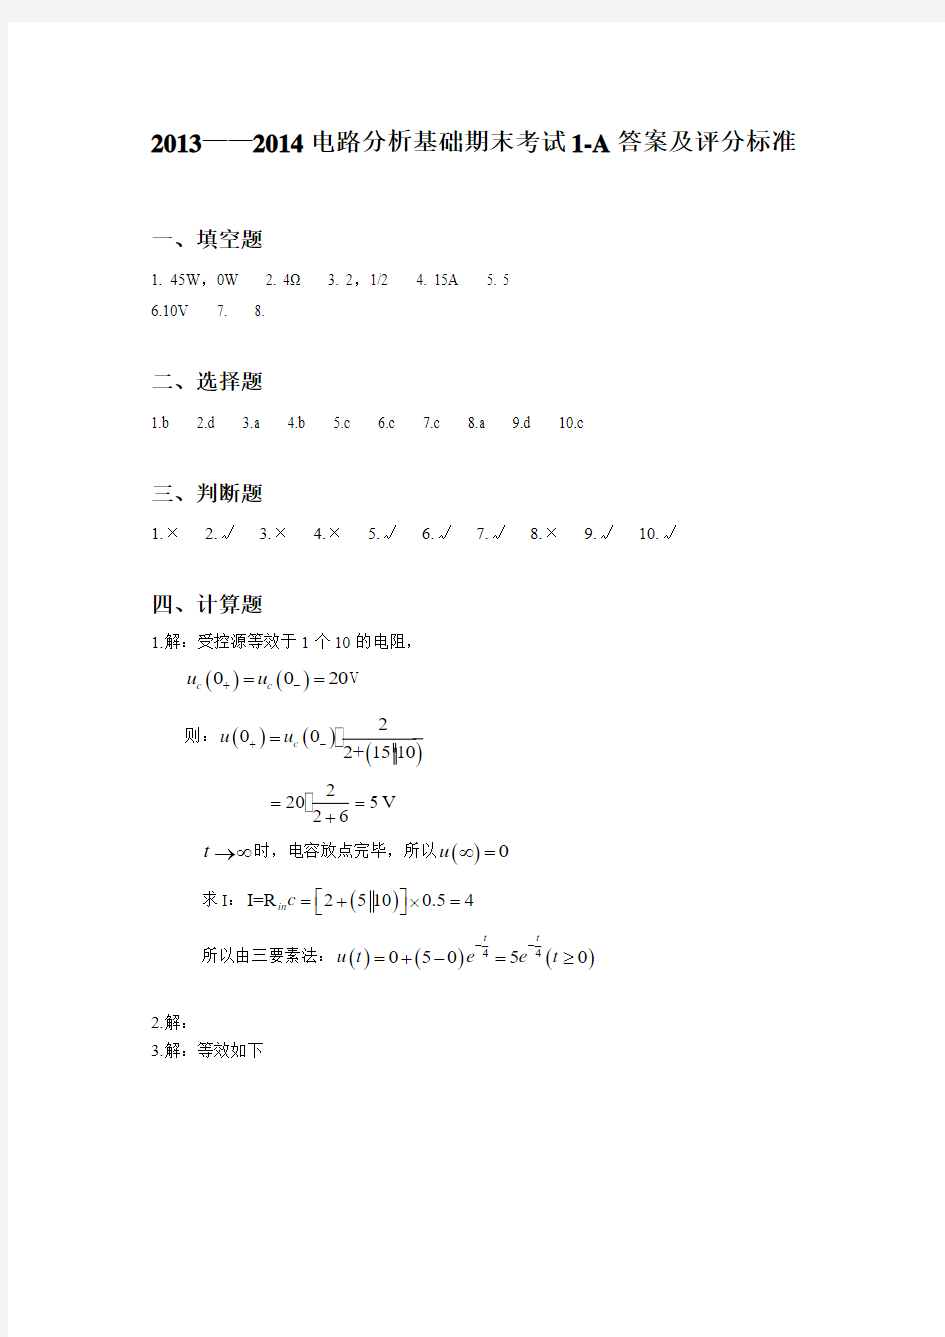 天津理工大学2014年期末考试电路答案1-A